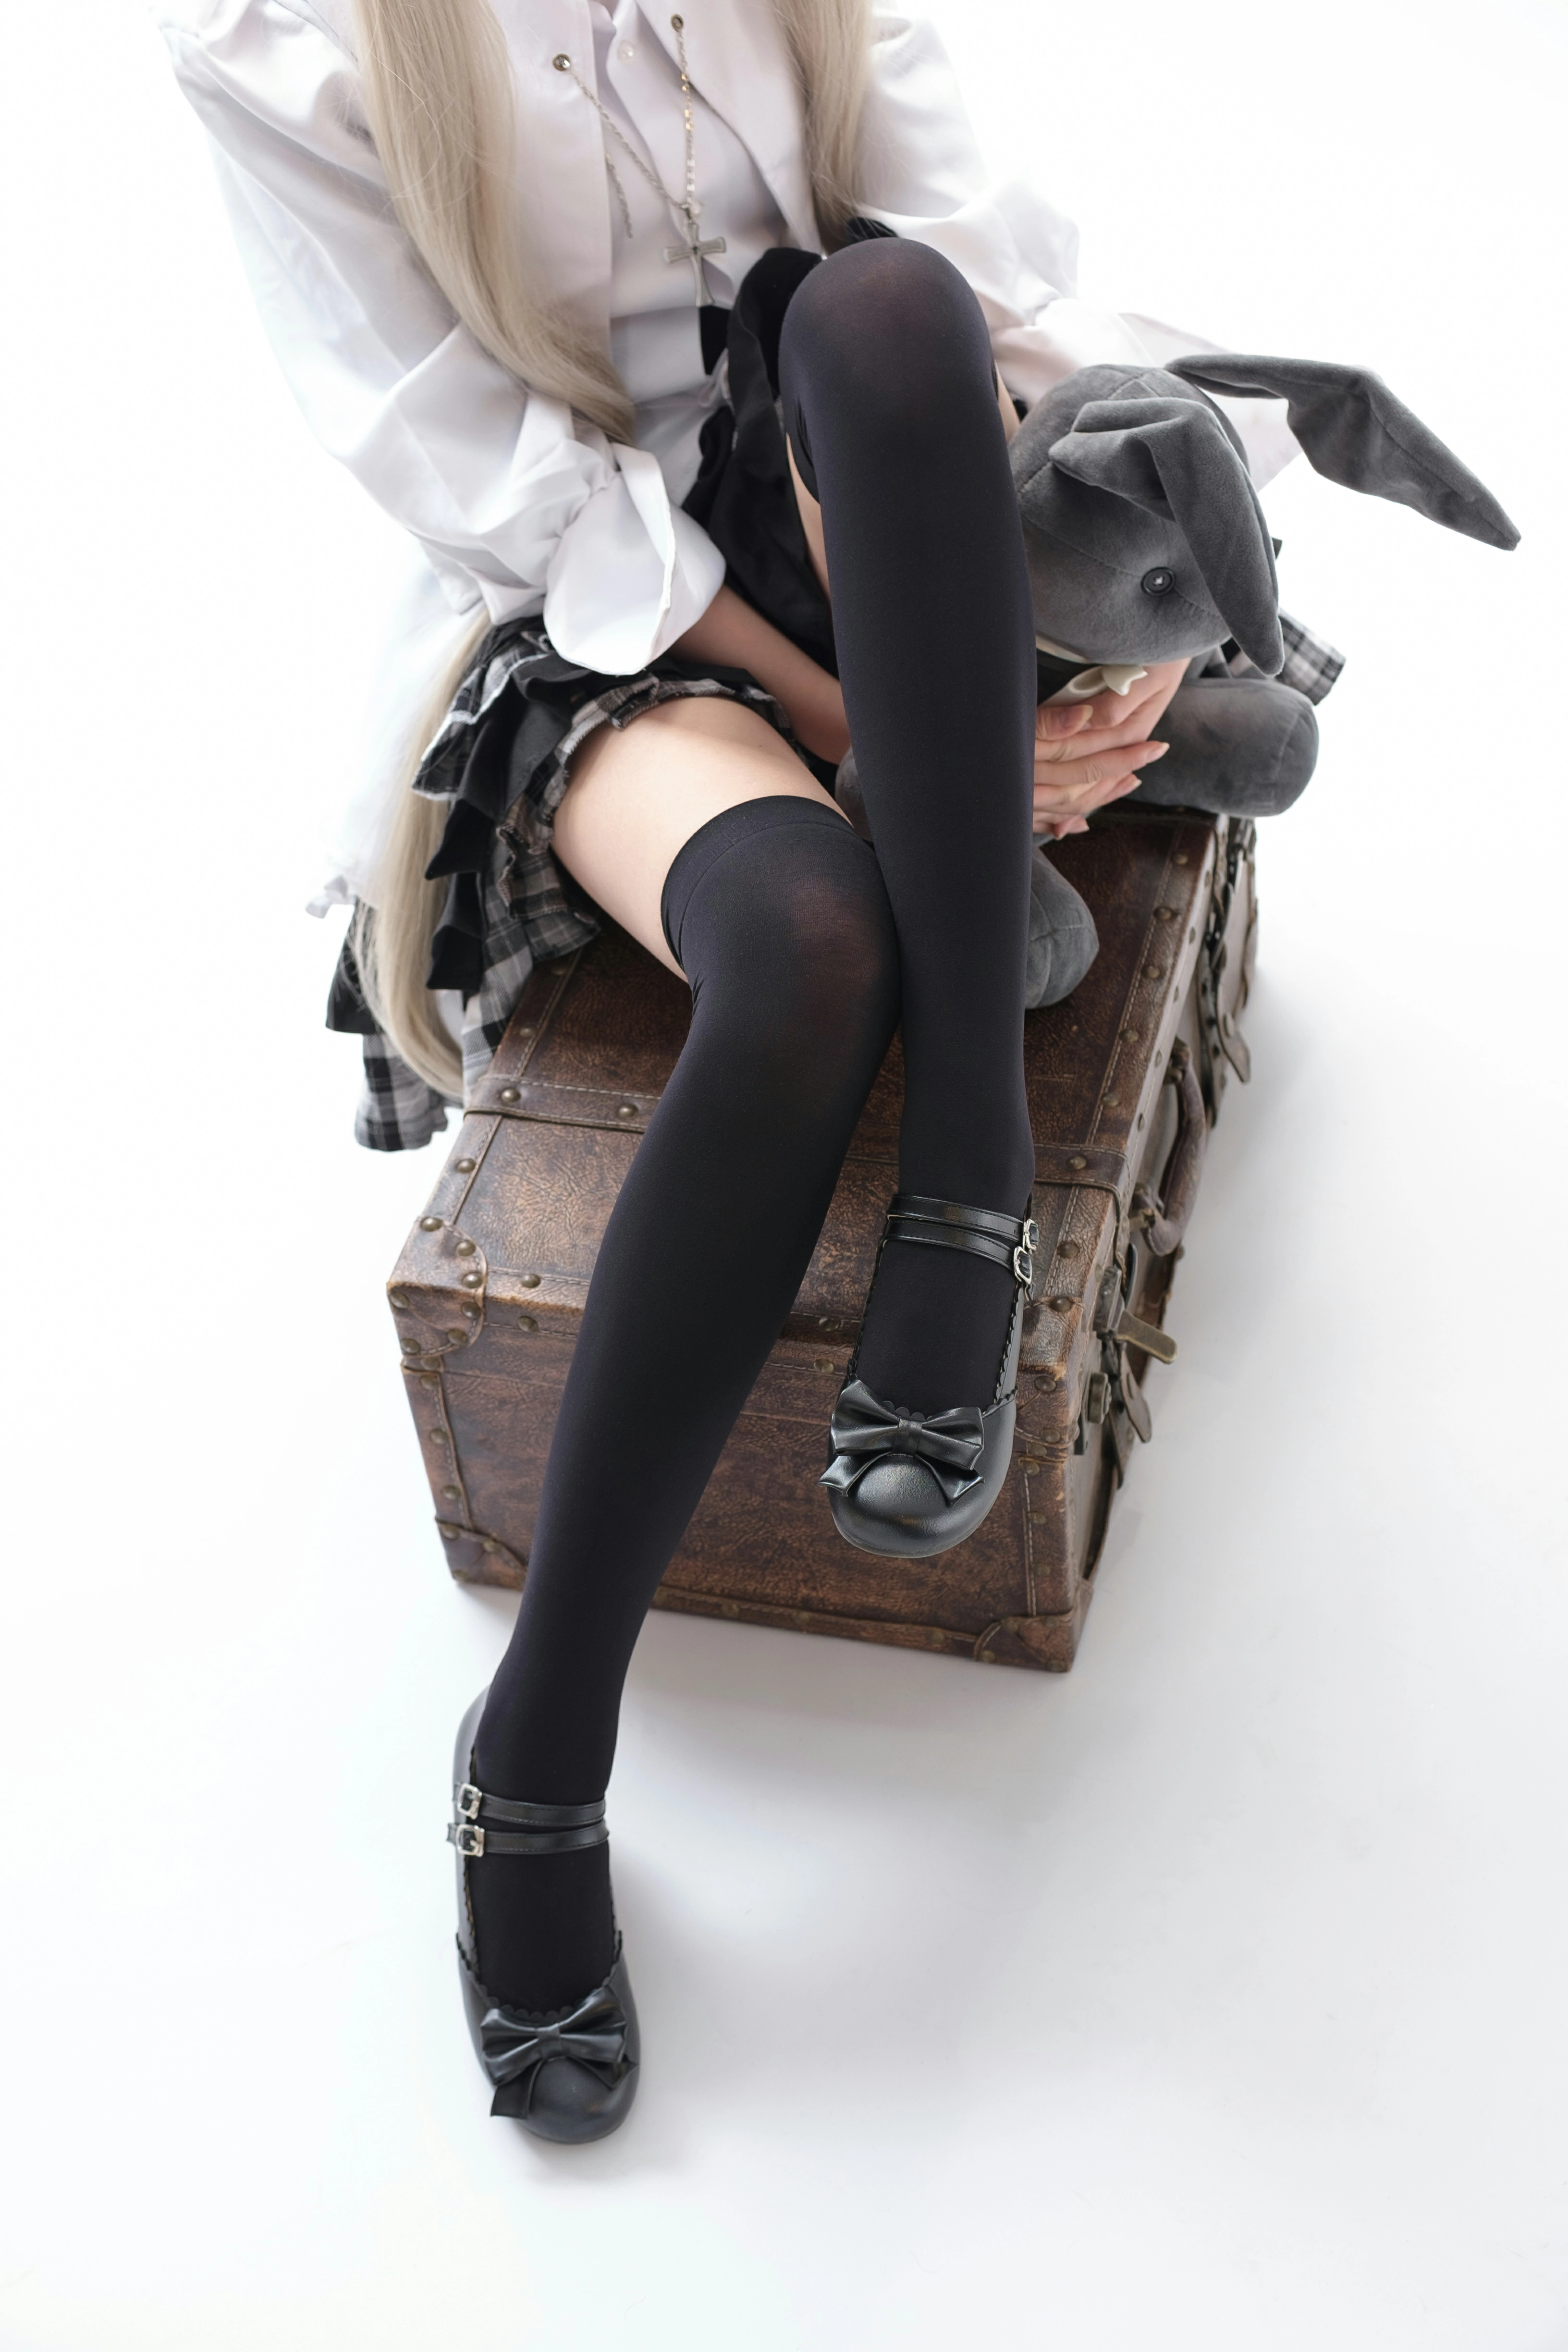 [森萝财团]SSR-006 穹妹COS 清纯小萝莉 格子短裙加黑色丝袜美腿性感私房写真集,